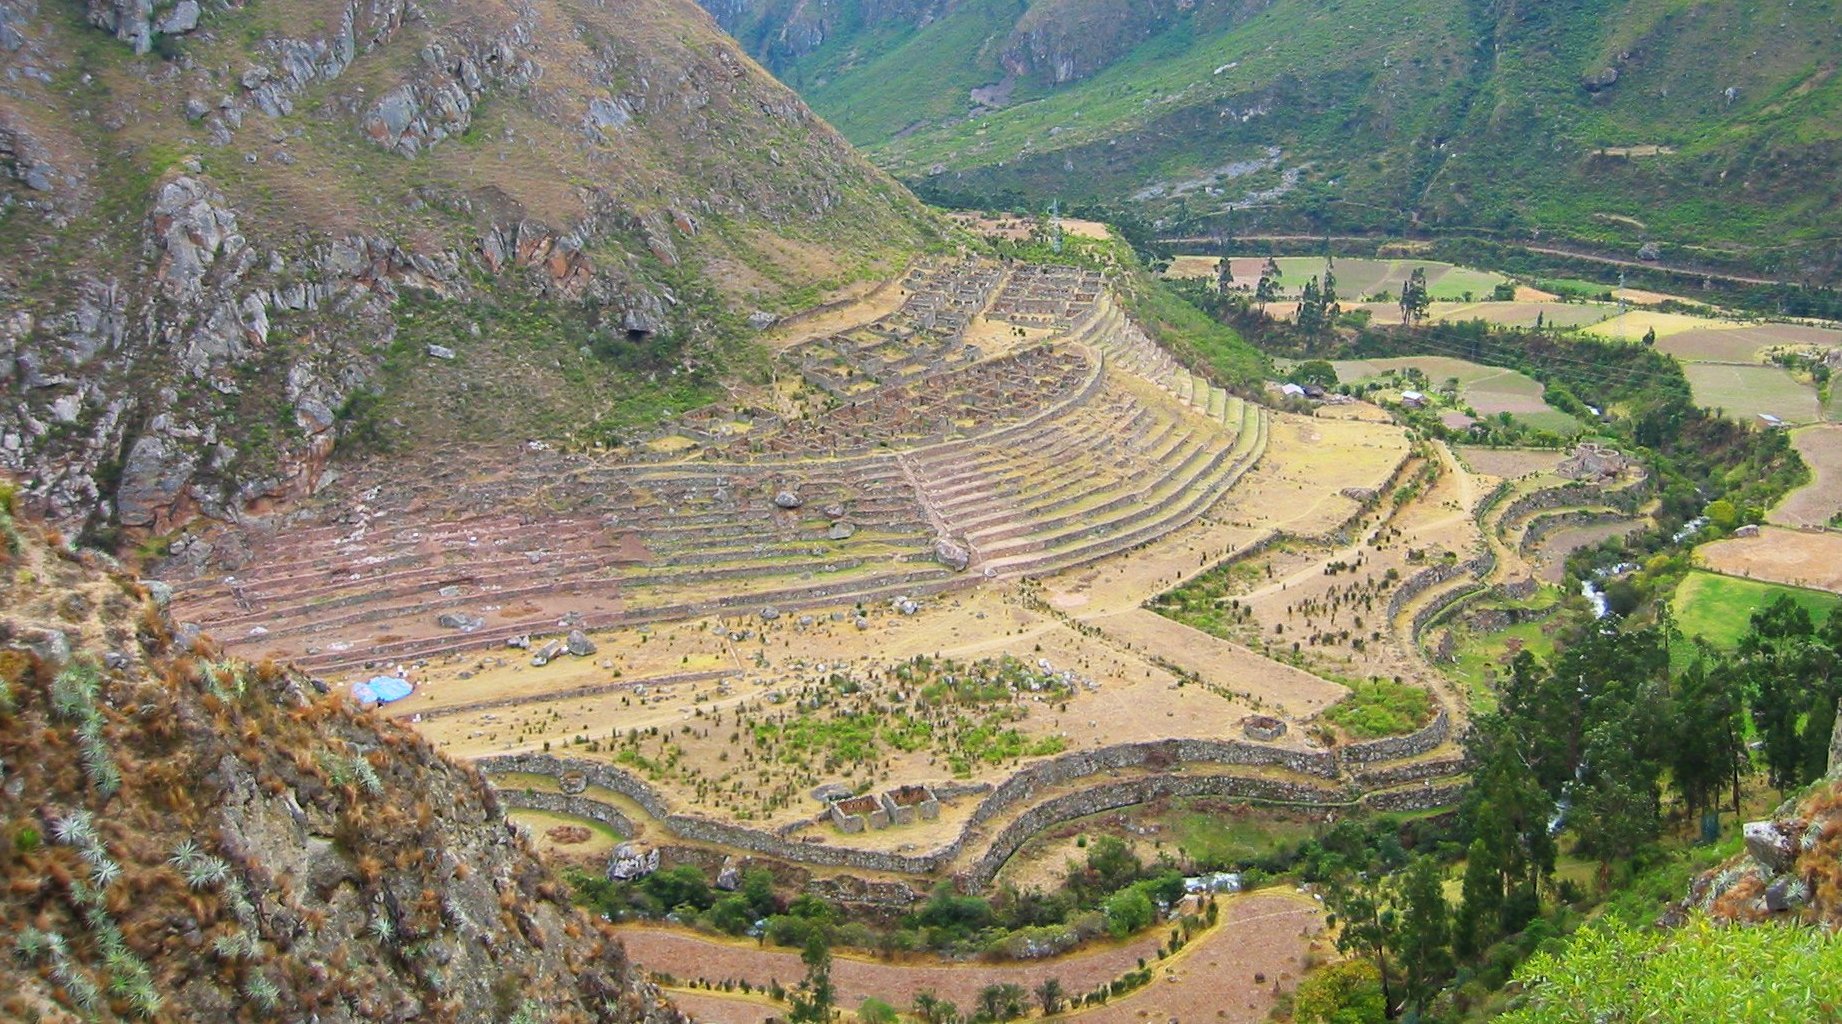 LLactapata, Peru